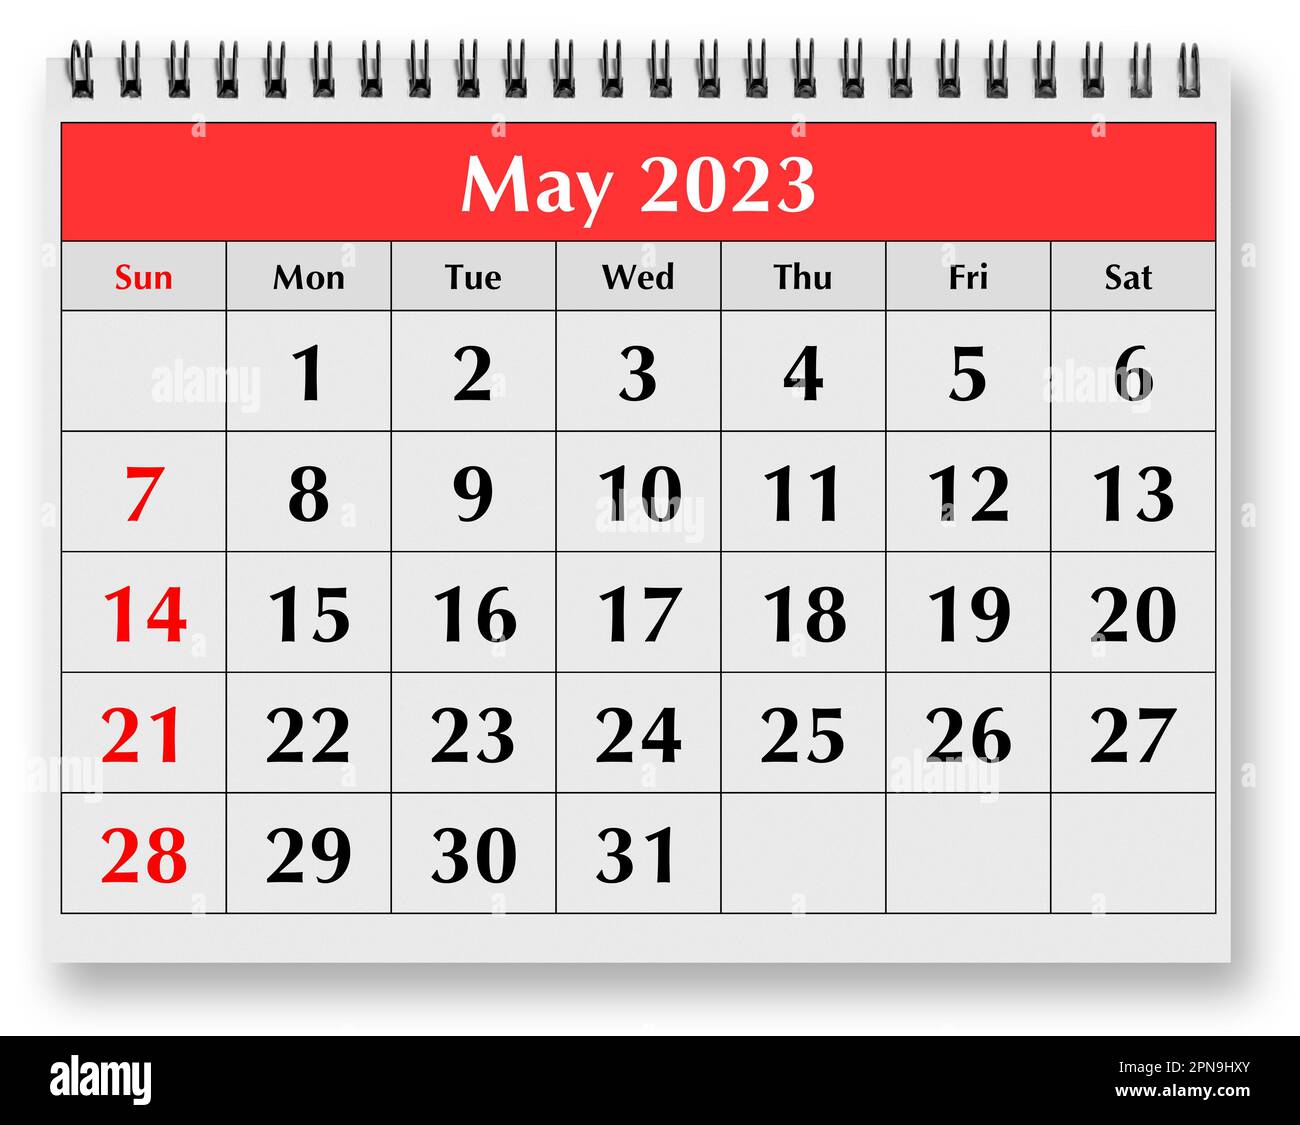 Calendario Mayo De 2023 Mayo 2023 Imágenes recortadas de stock - Alamy